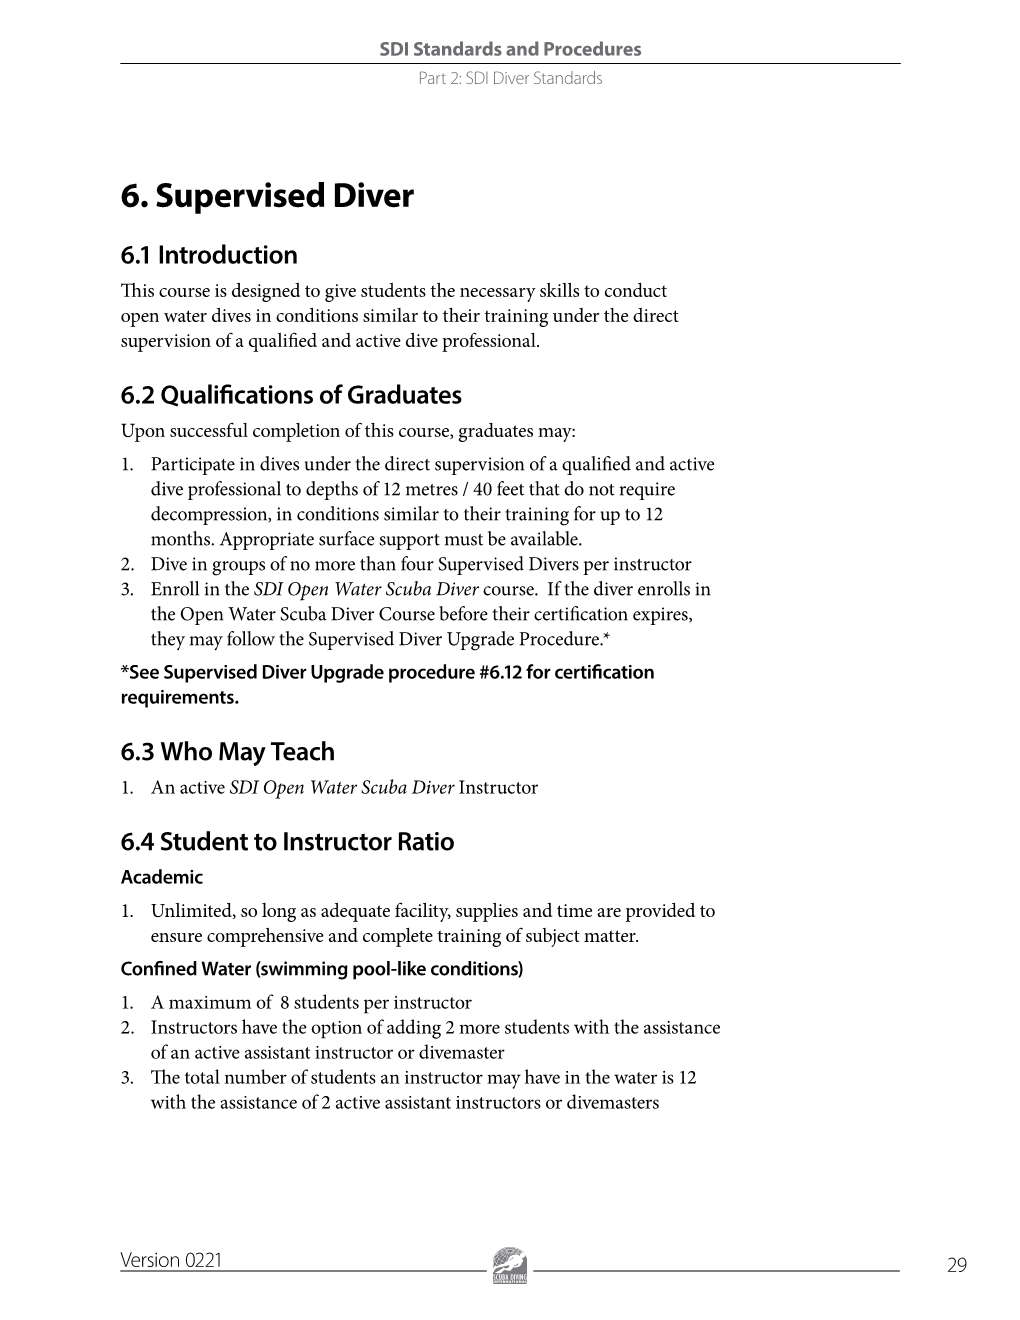 6. Supervised Diver